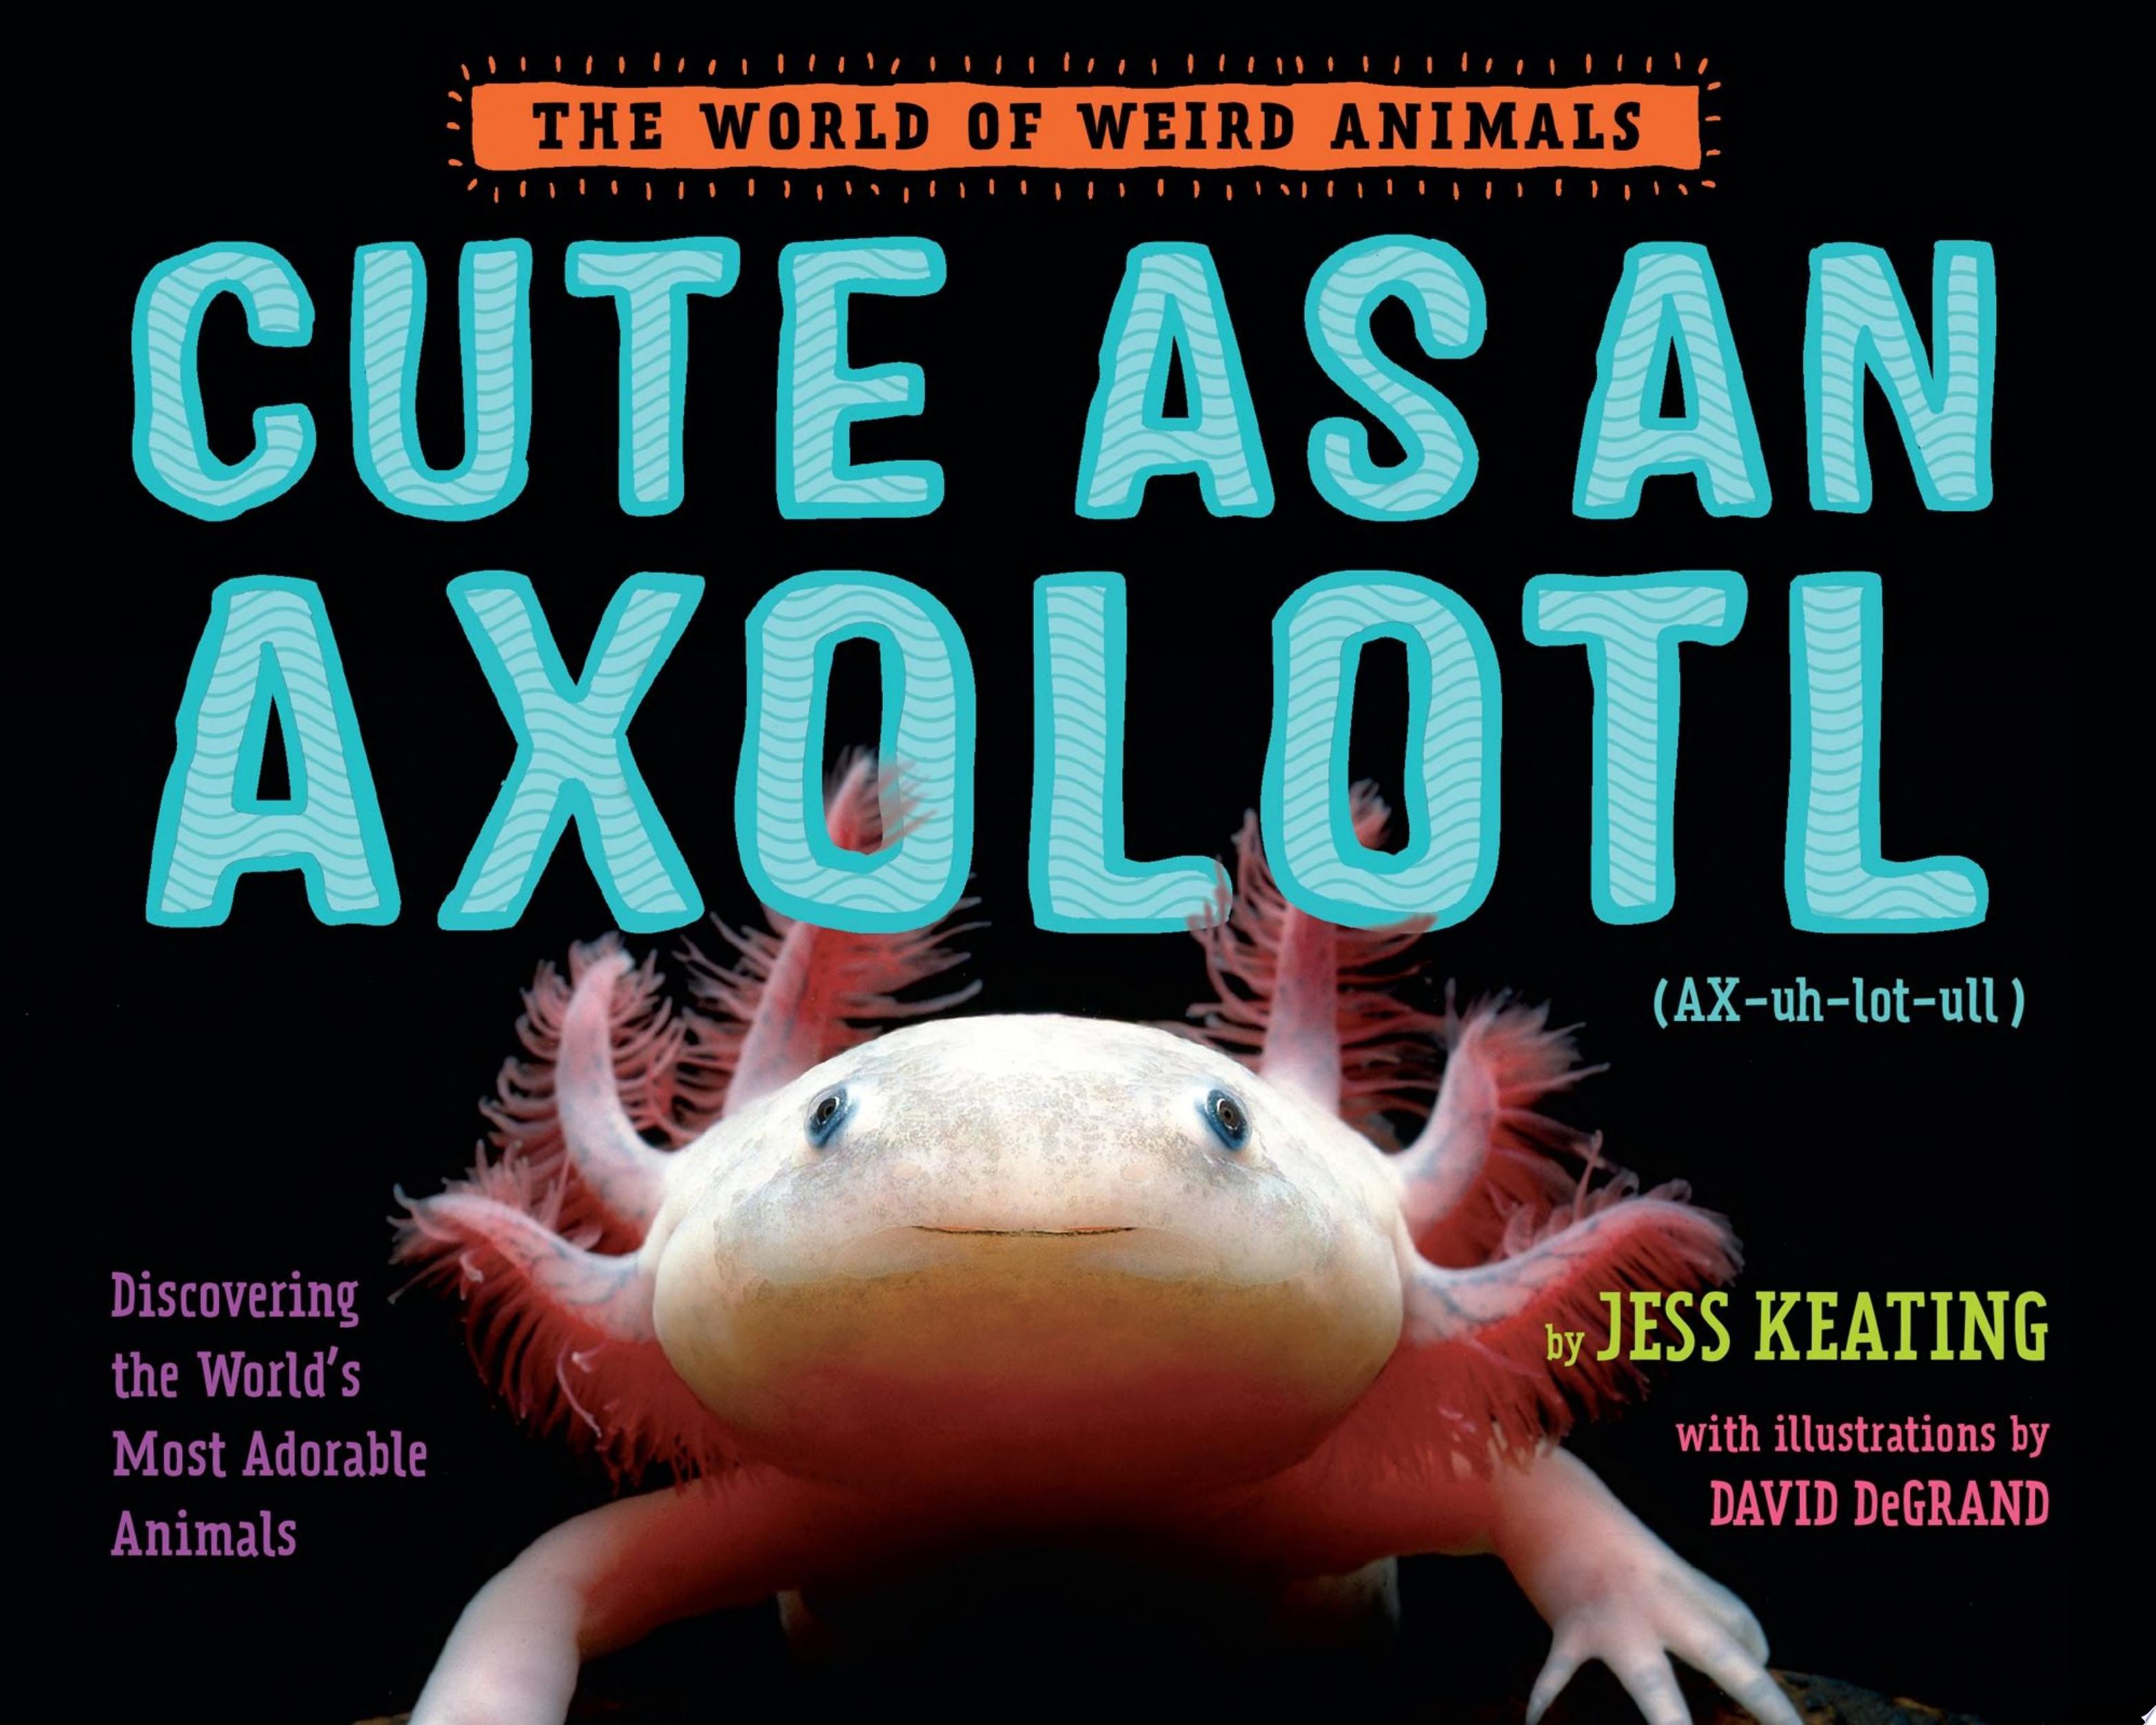 Image for "Cute as an Axolotl"